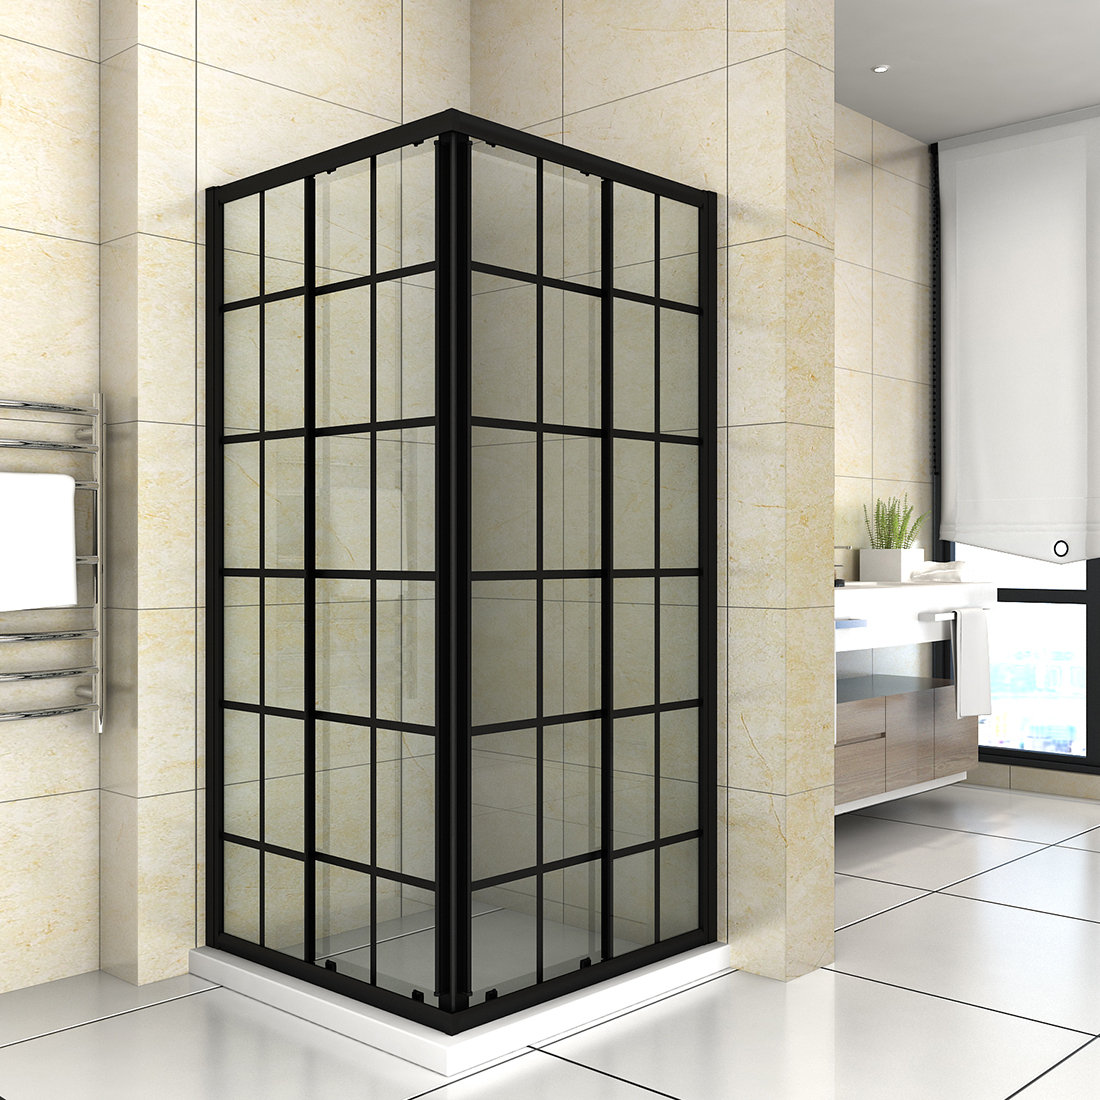 https://assets.wfcdn.com/im/91060123/compr-r85/1119/111908313/36-w-x-36-d-x-72-h-framed-square-shower-enclosure.jpg